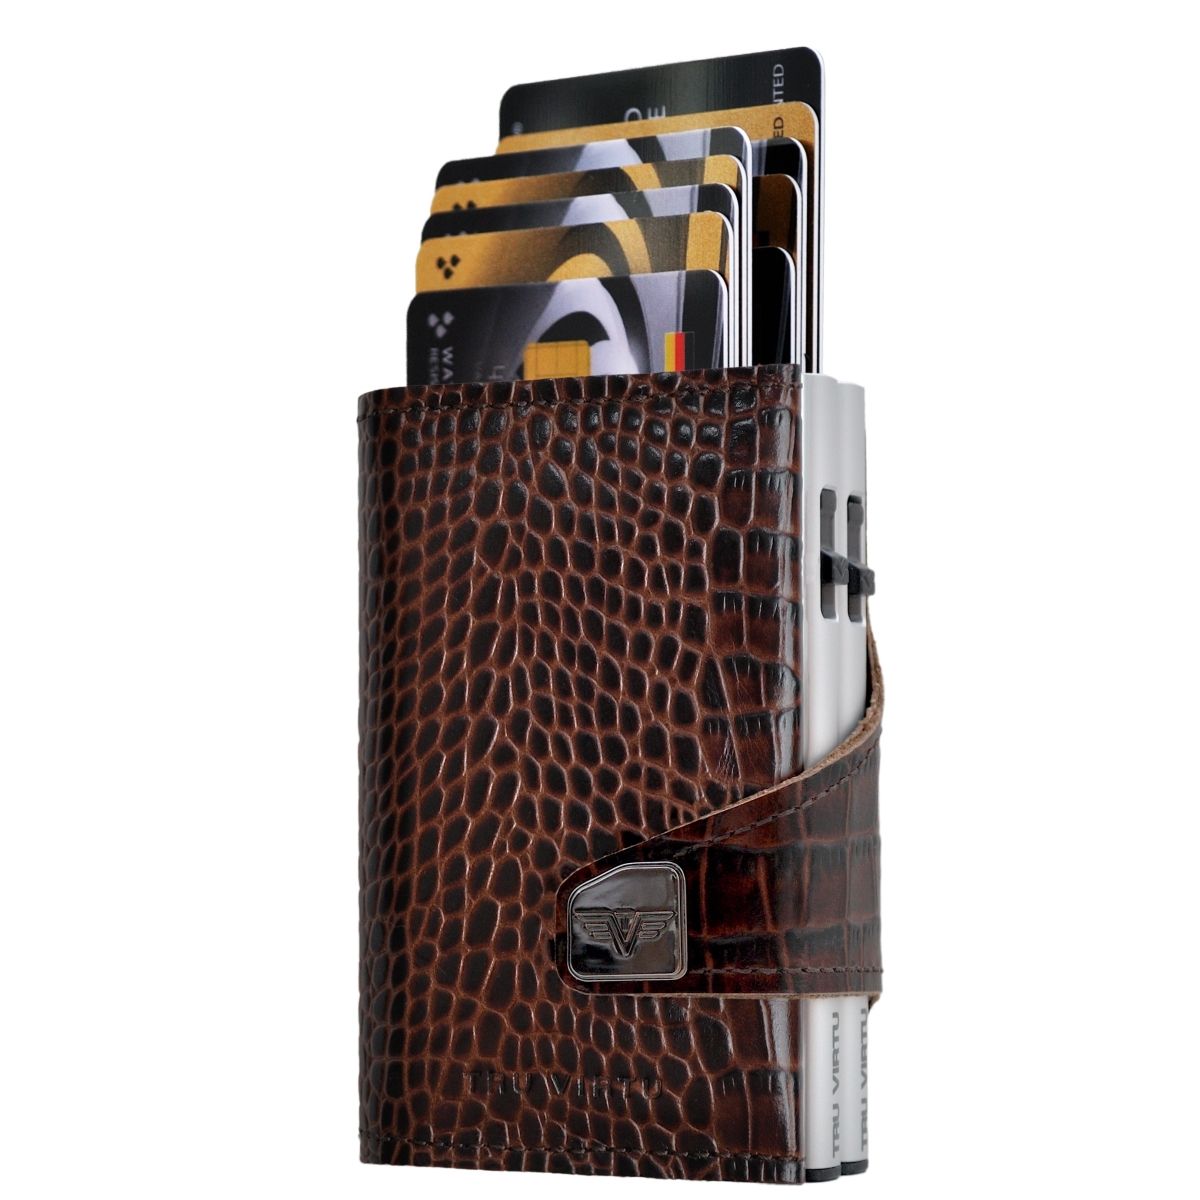 Buy Tru Virtu Textured Strap Card Holder, Brown Color Men